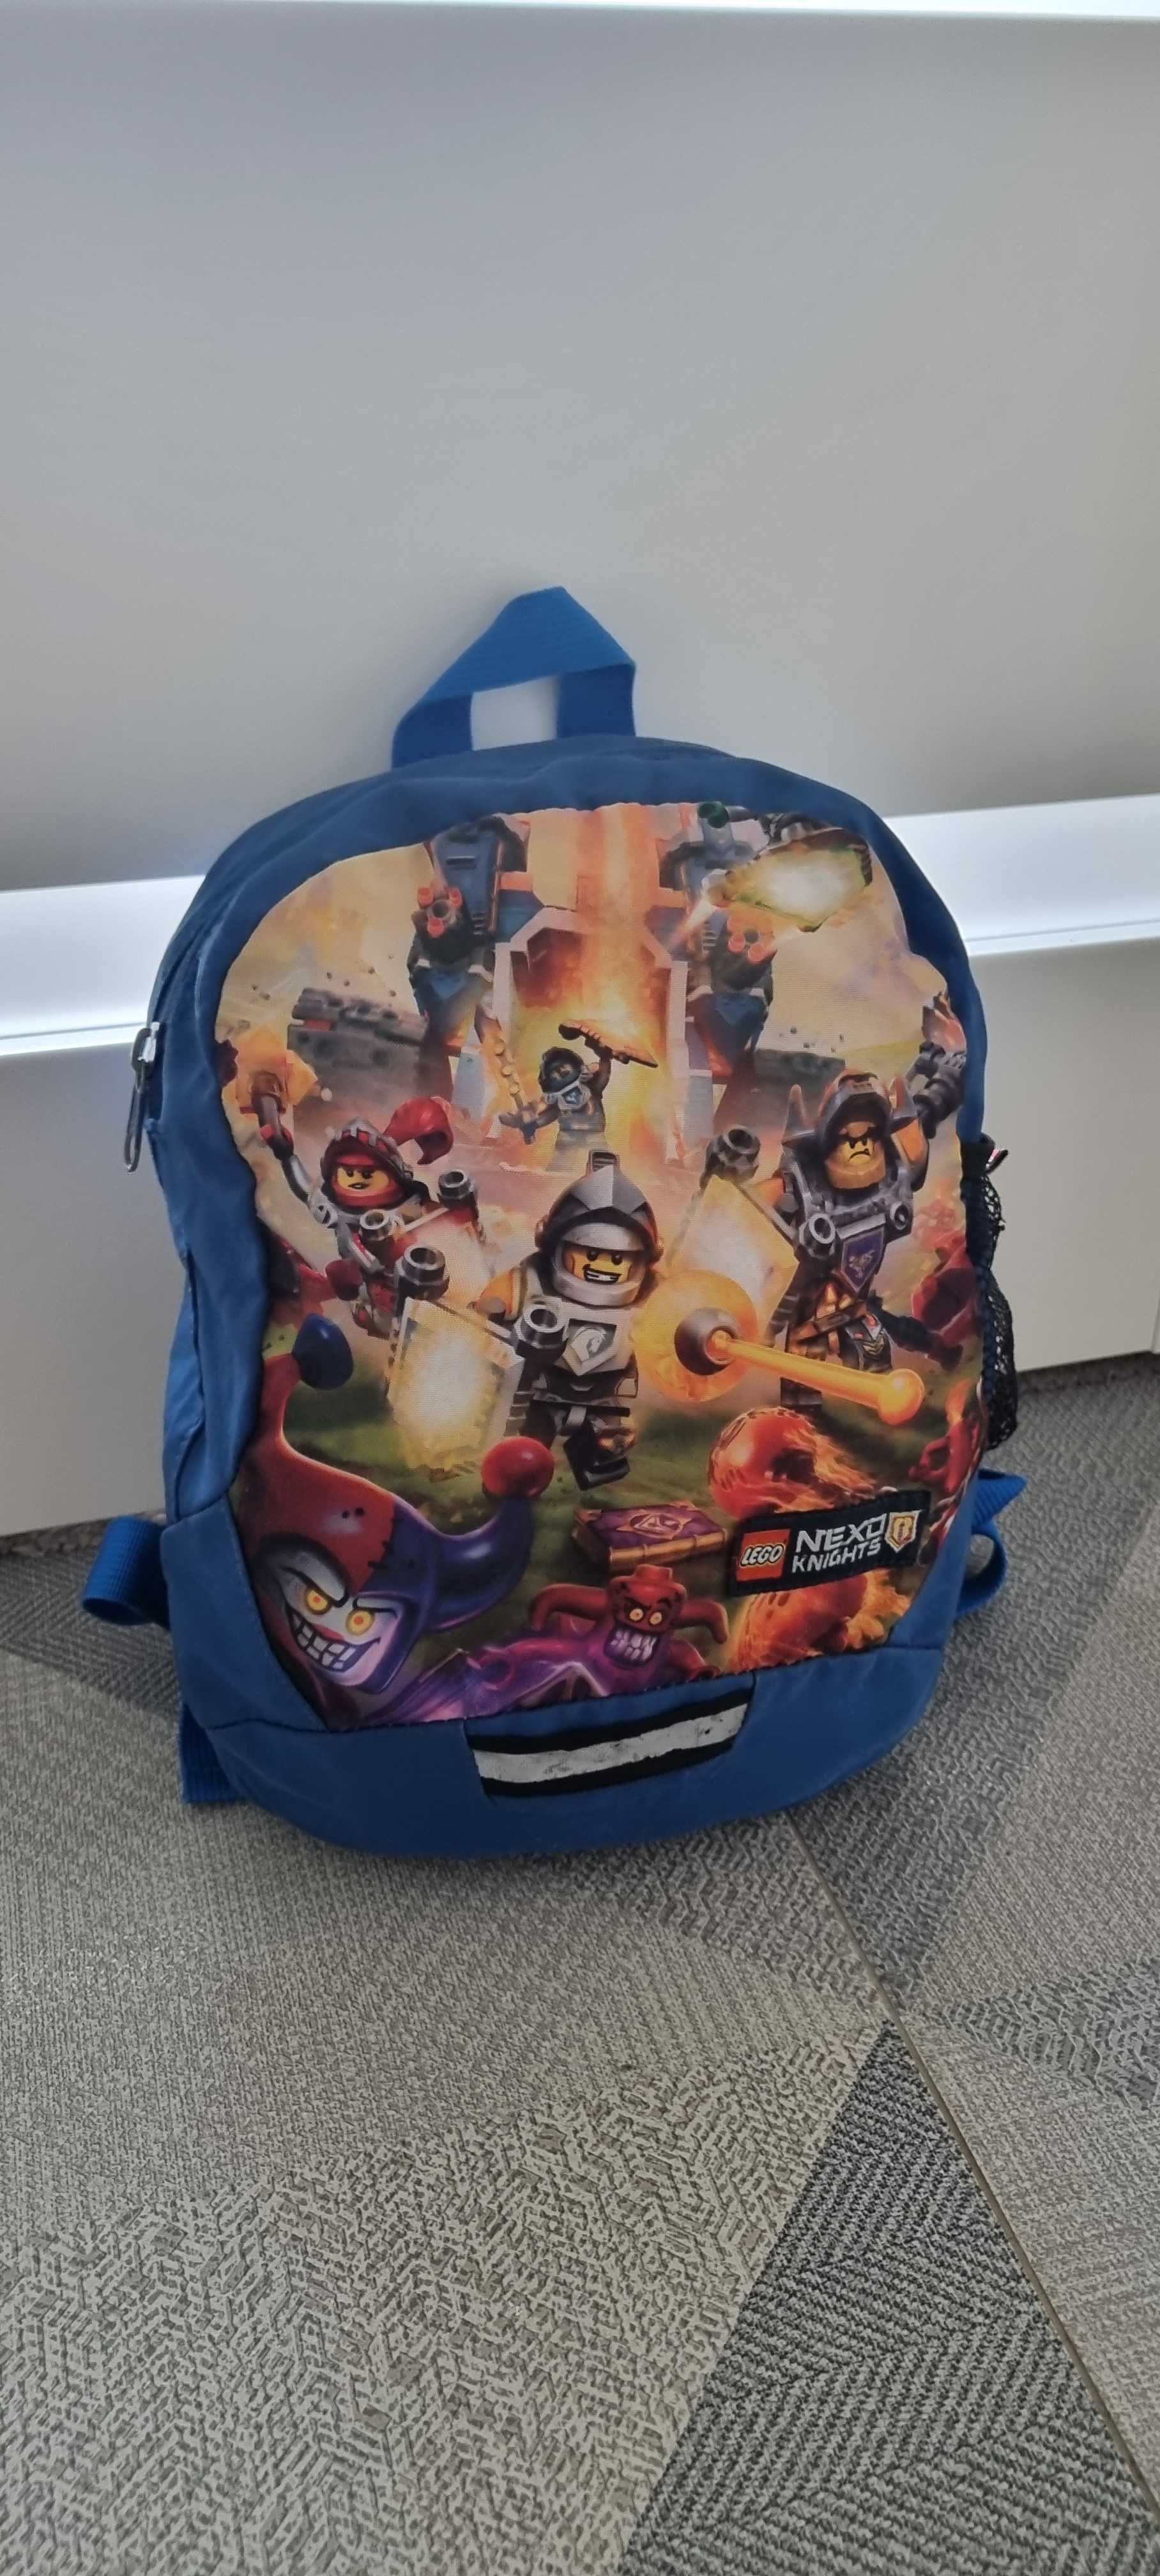 Plecak Lego Nexo Knights niebieski - świetny w podróży i w przedszkolu